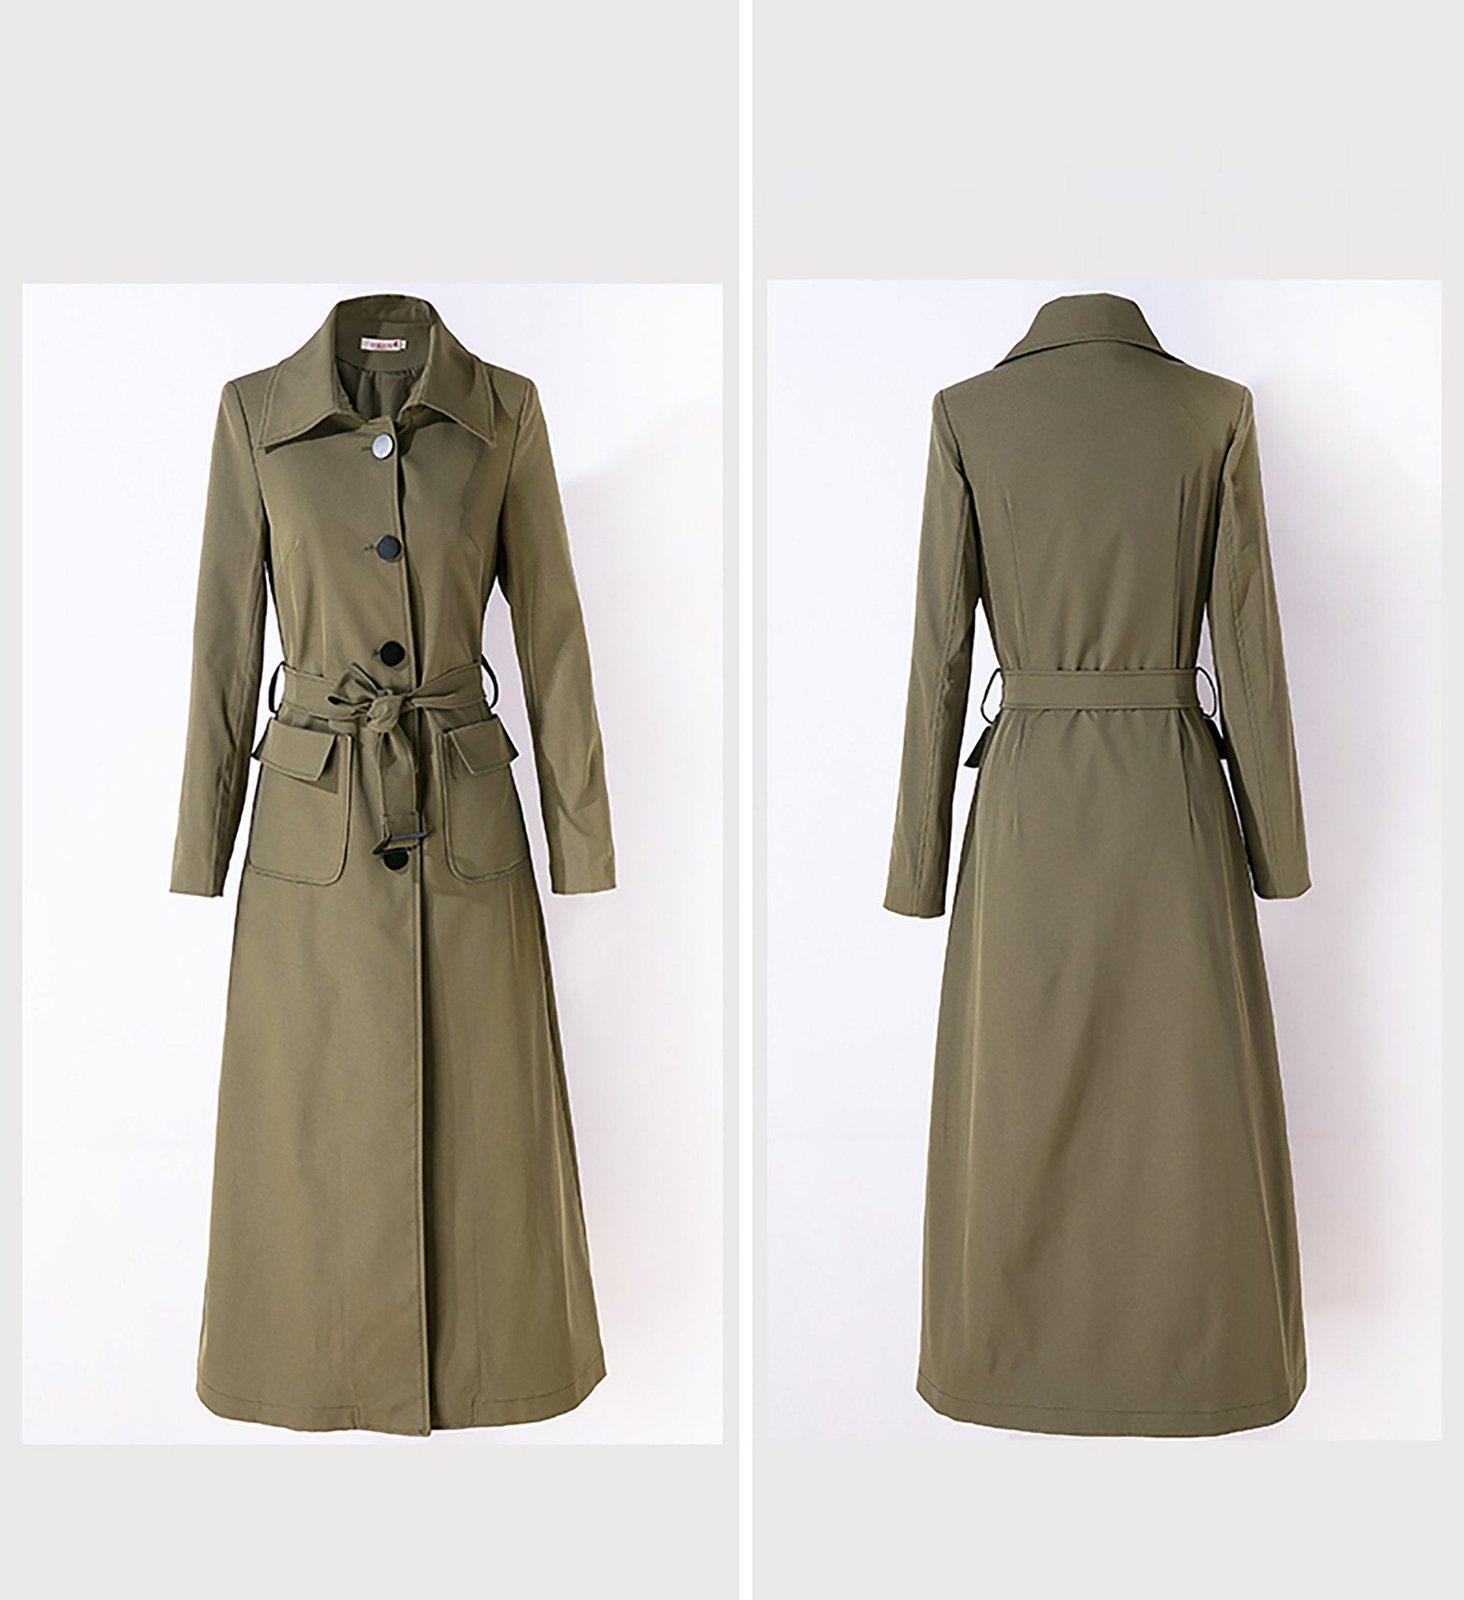 Women's Single Breasted Belted Long Trench Coat,Custom Women coat,Lady Long  Coat,Fall Coat for women Windbreaker Duster Coat Outerwear